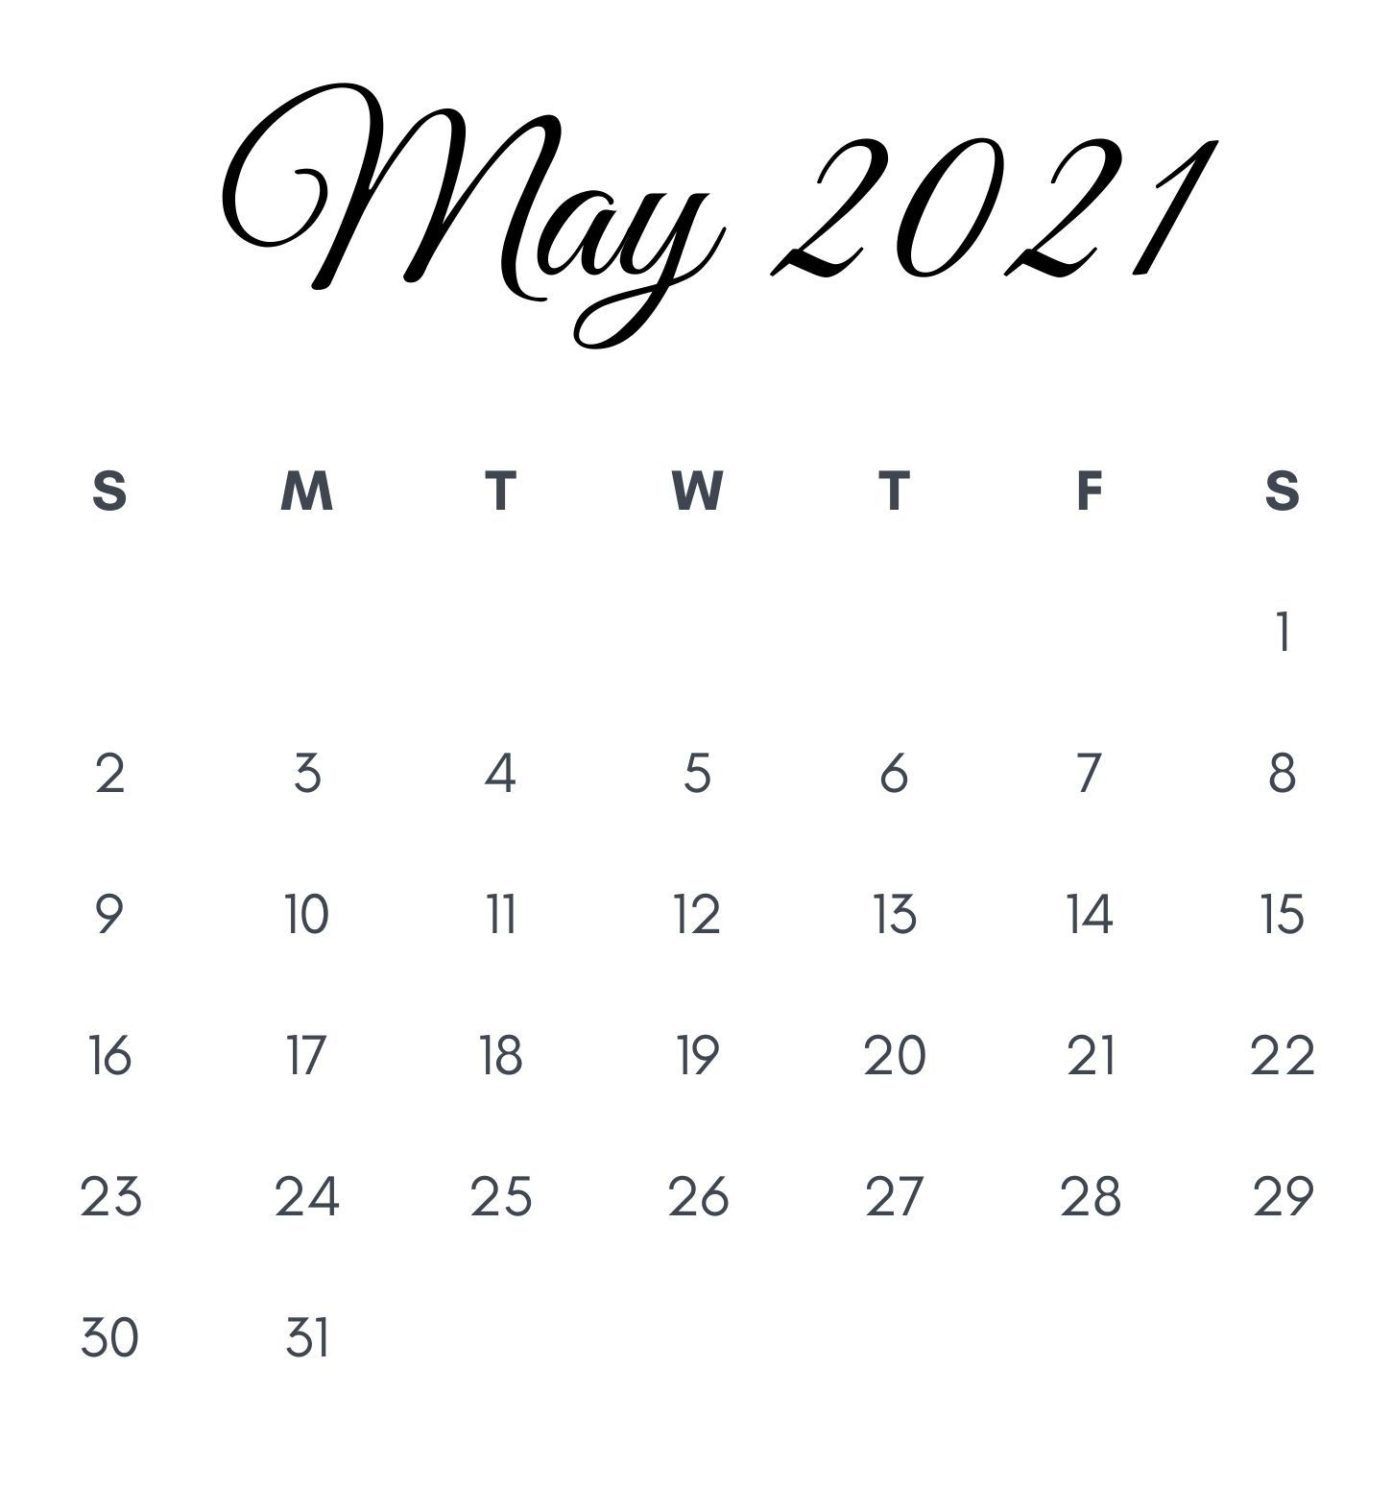 May 2021 Calendar For Desk